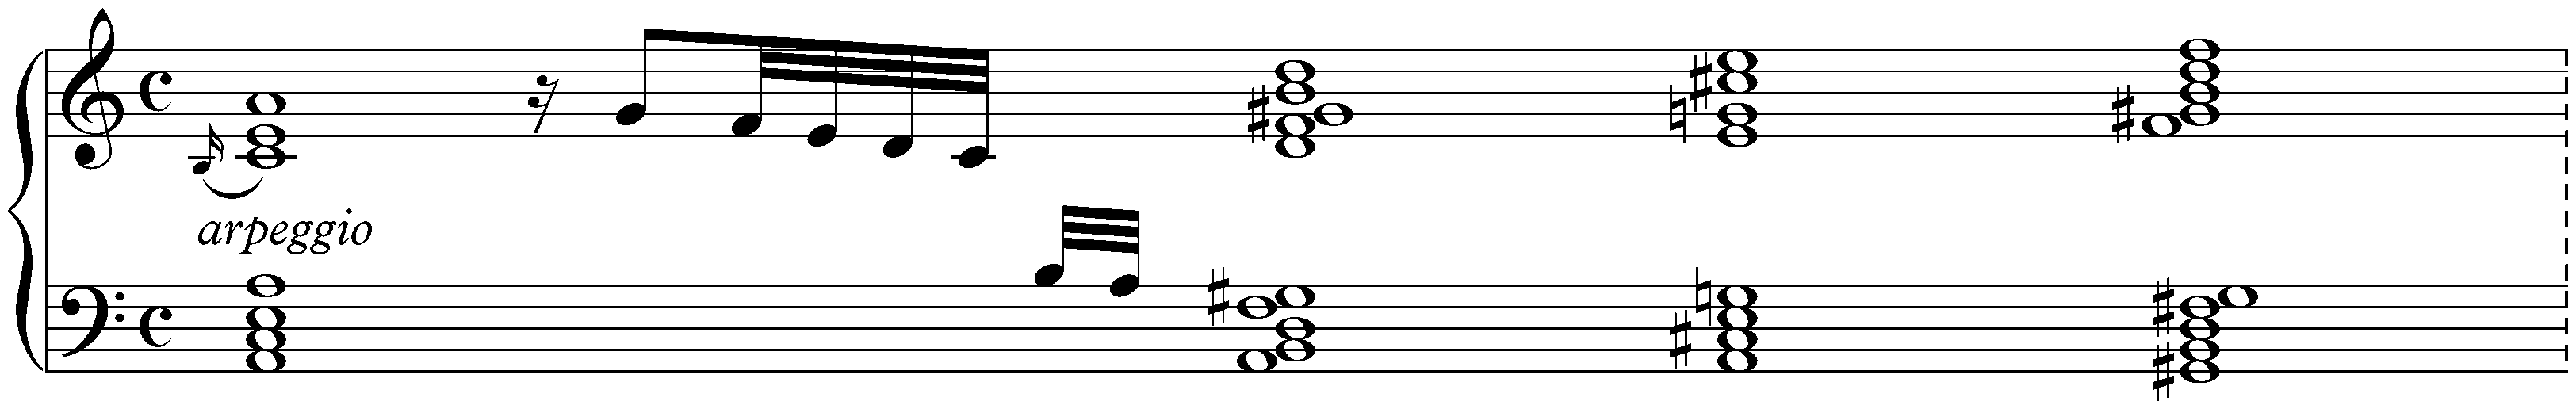 Prélude in A minor, HWV 575